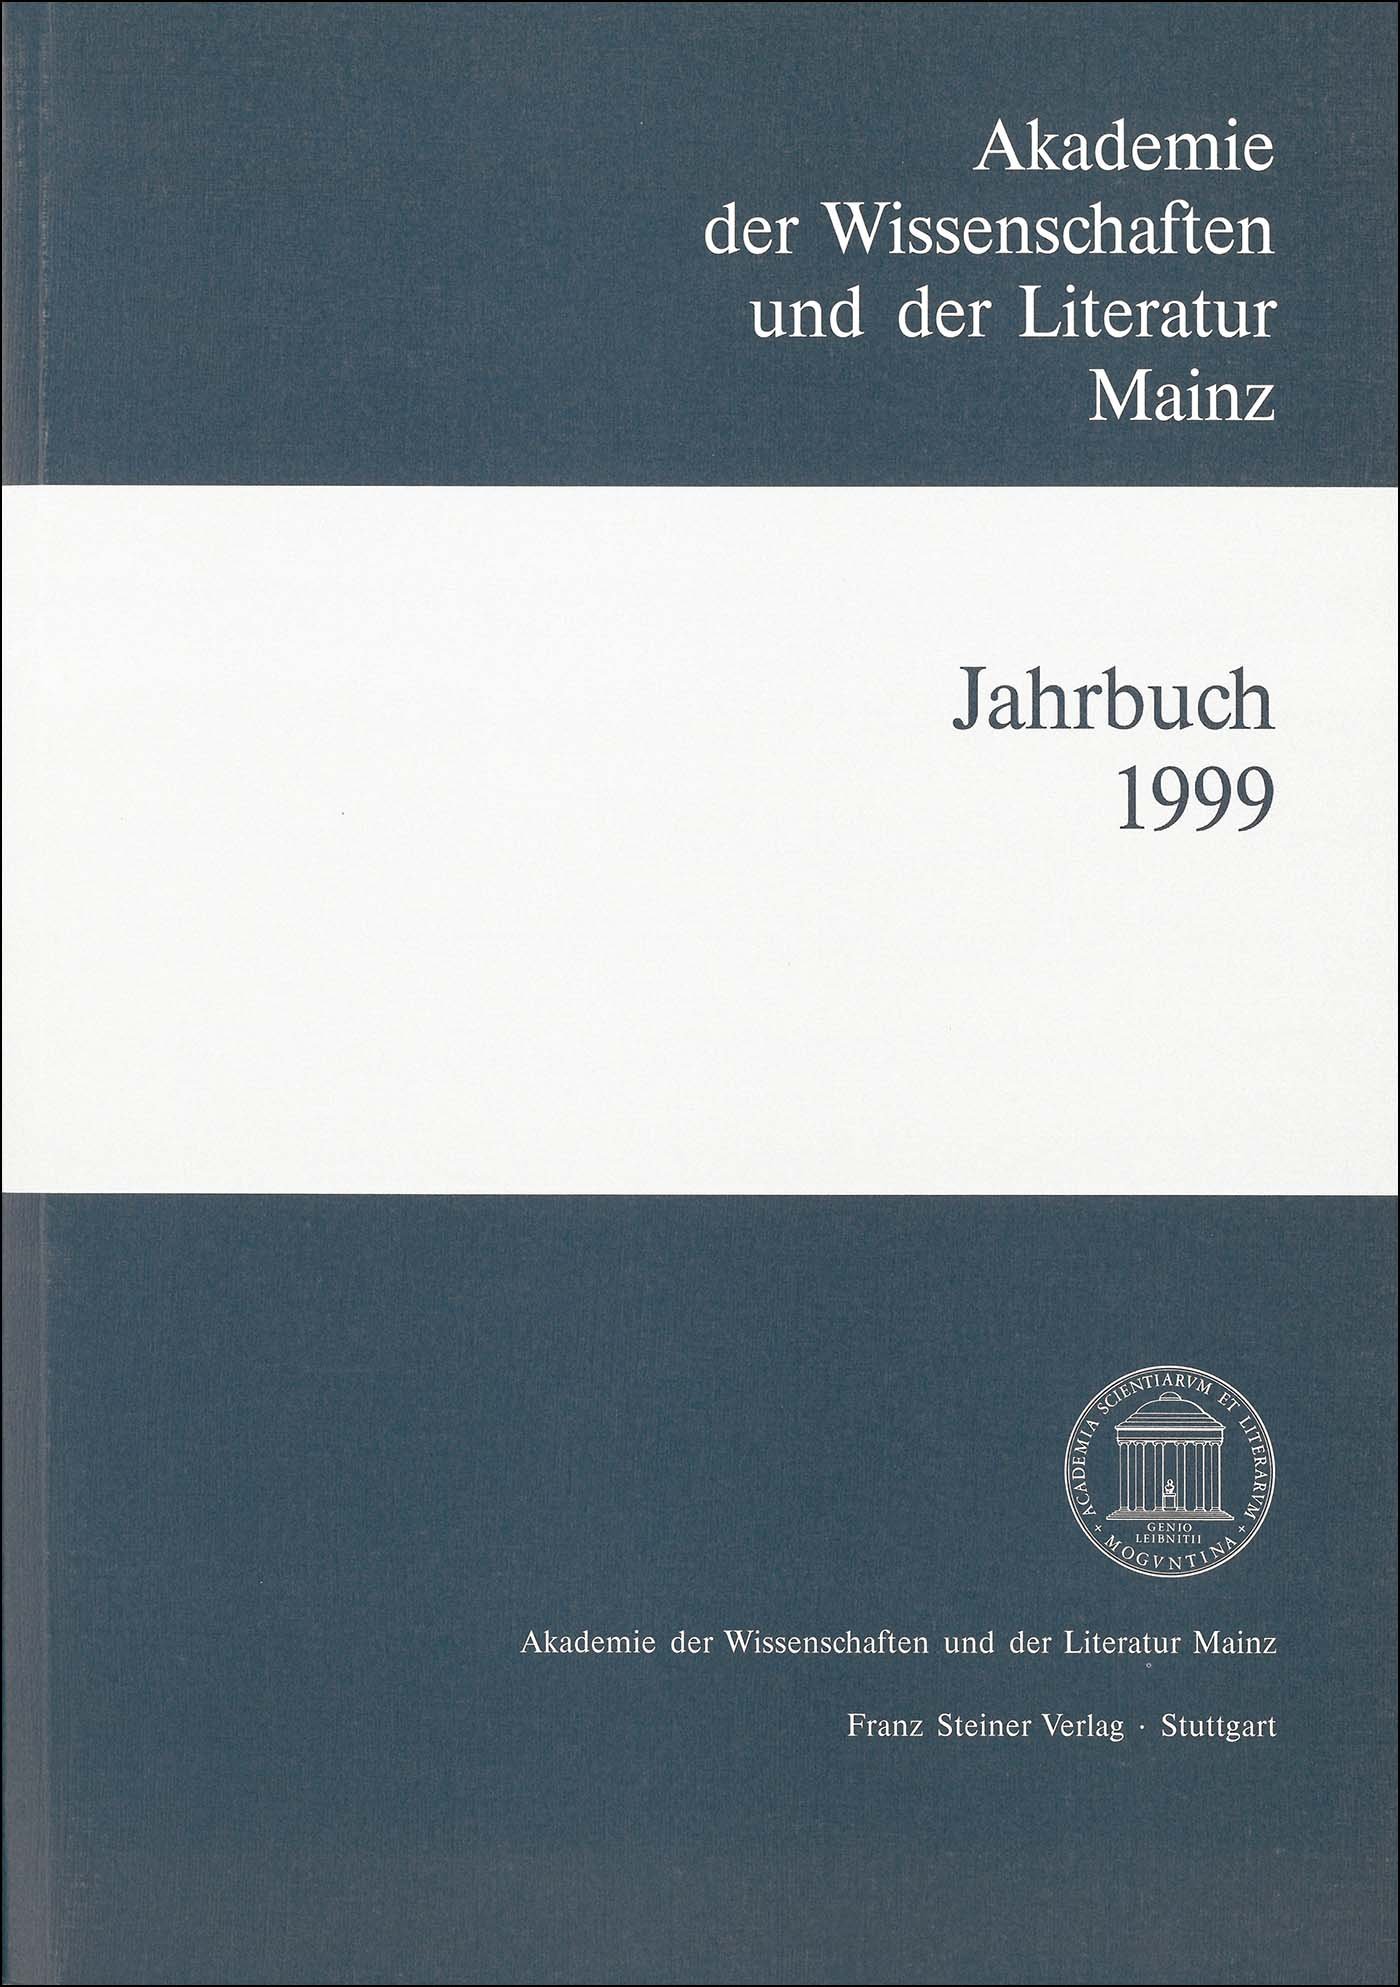 Akademie der Wissenschaften und der Literatur Mainz – Jahrbuch 50 (1999)